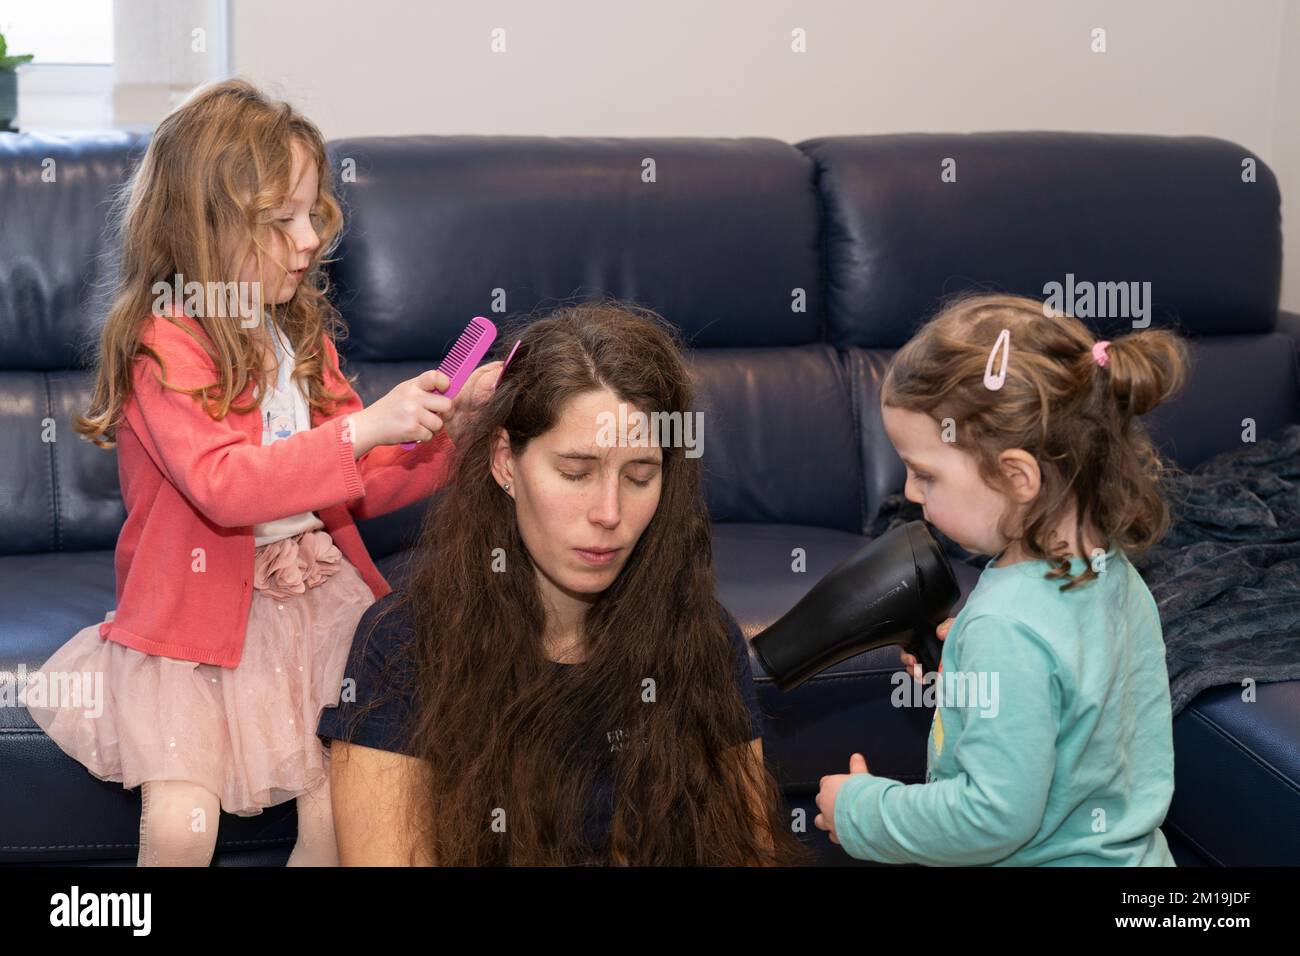 Eine Mutter und ihre beiden Töchter spielen und interagieren miteinander, wobei ein Mädchen die nassen Haare kämmt und das andere Kind die Haare mit einem Haartrockner trocknet Stockfoto